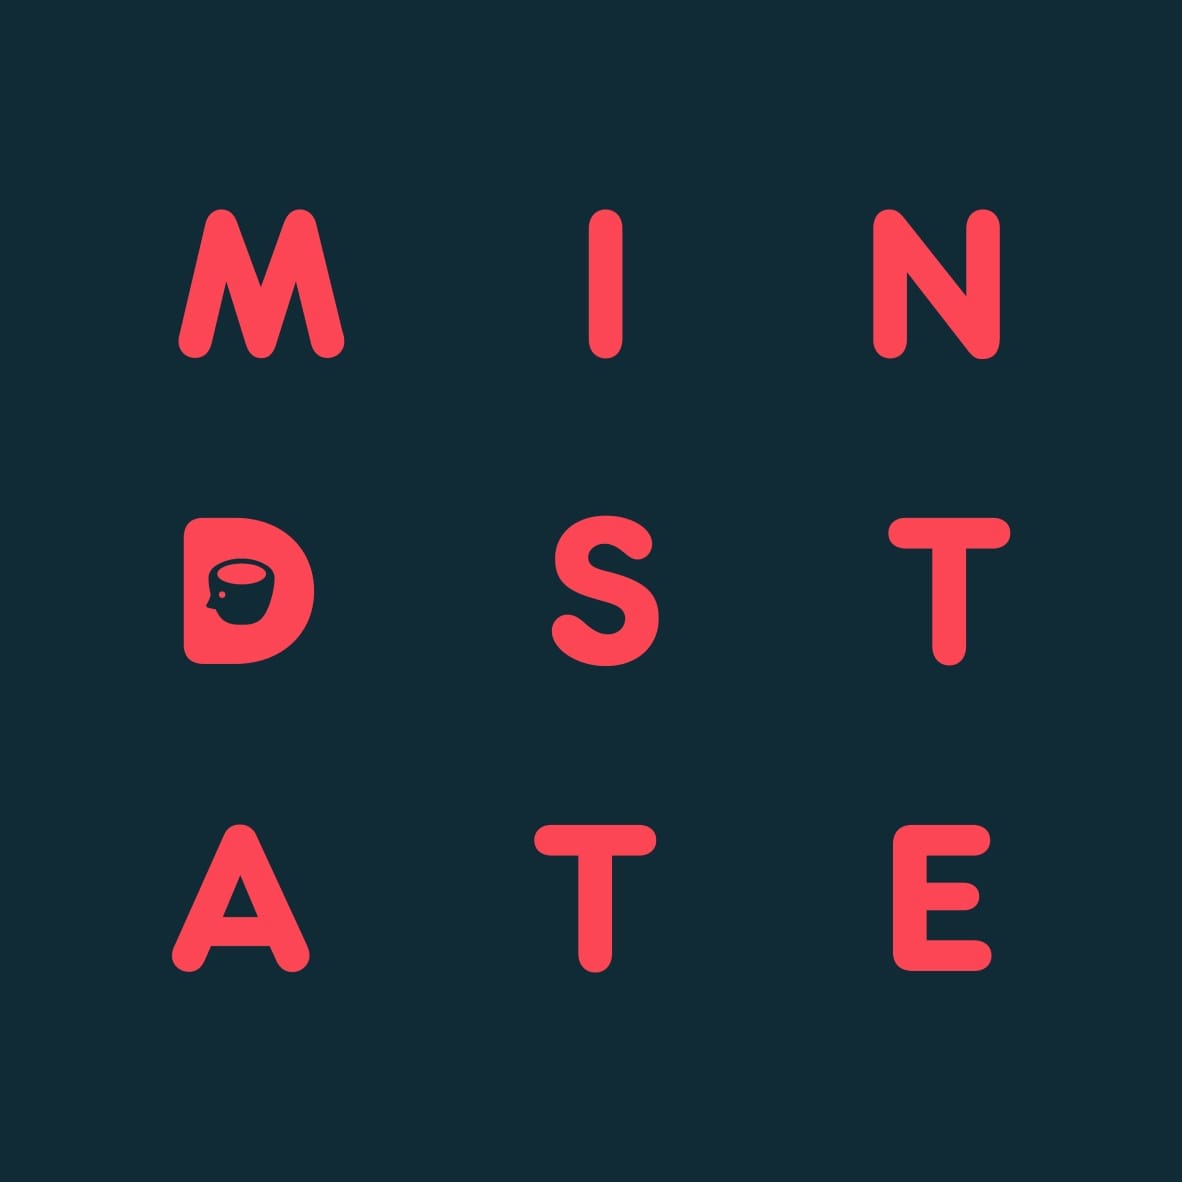 Mind State album cover artwork.